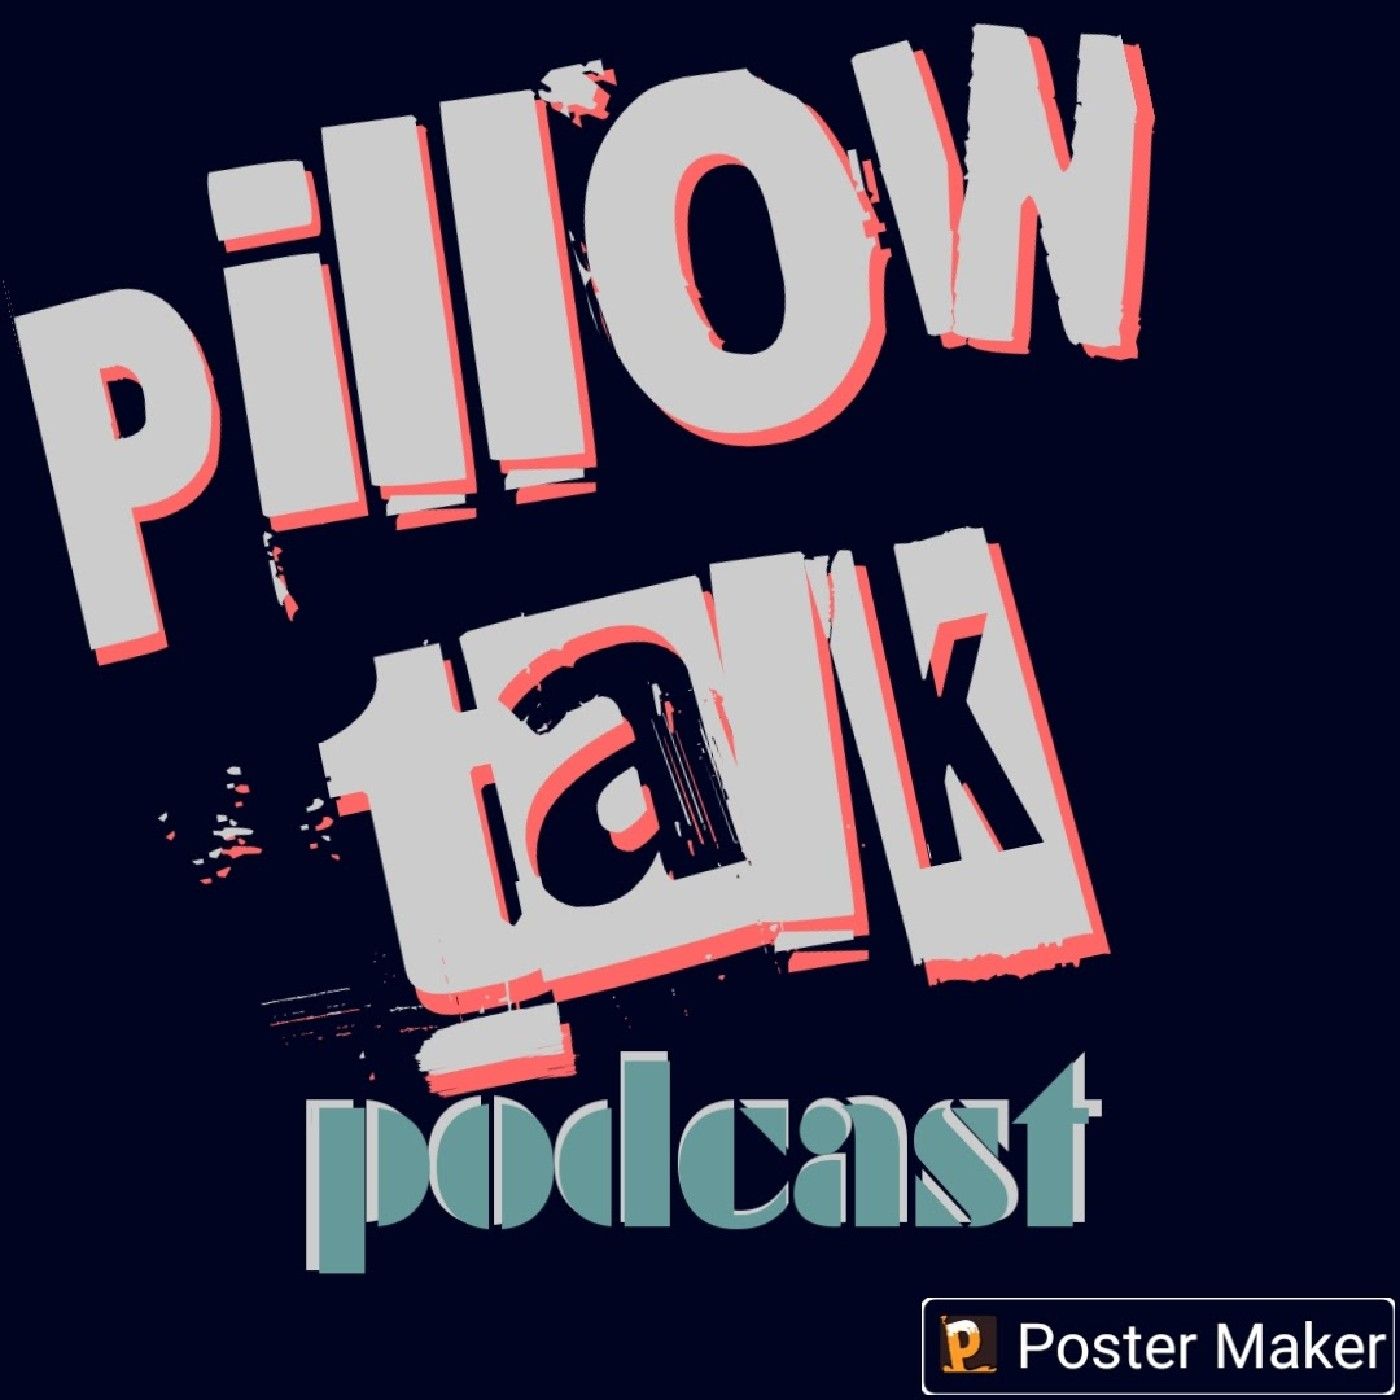 Episode 3 - PILLOW TALK